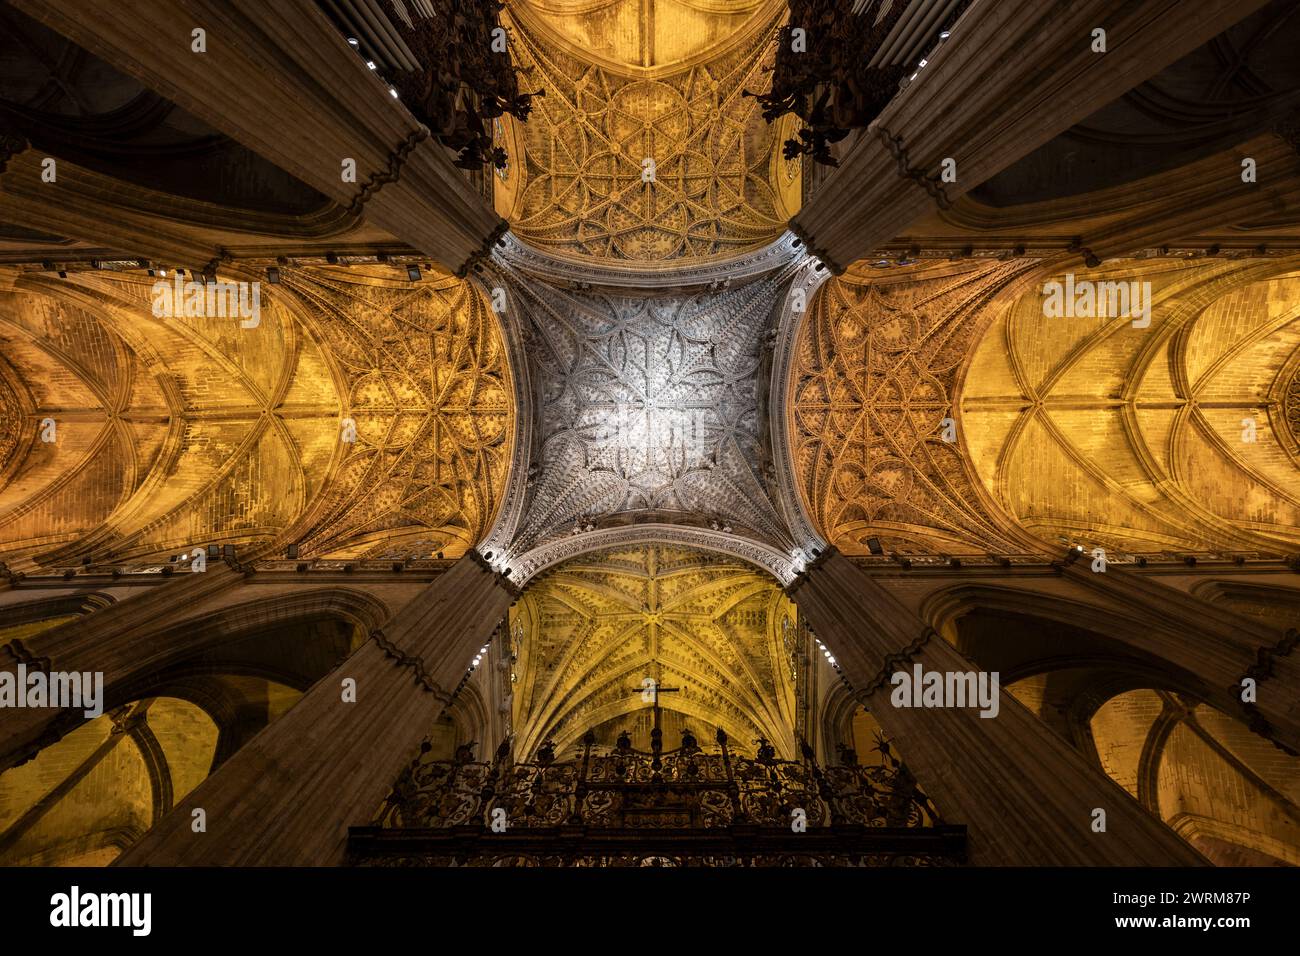 Catedral de Sevilla (Catedral de Sevilla) majestuoso interior, impresionantes bóvedas góticas acanaladas, techo de la iglesia medieval más grande del mundo en Foto de stock